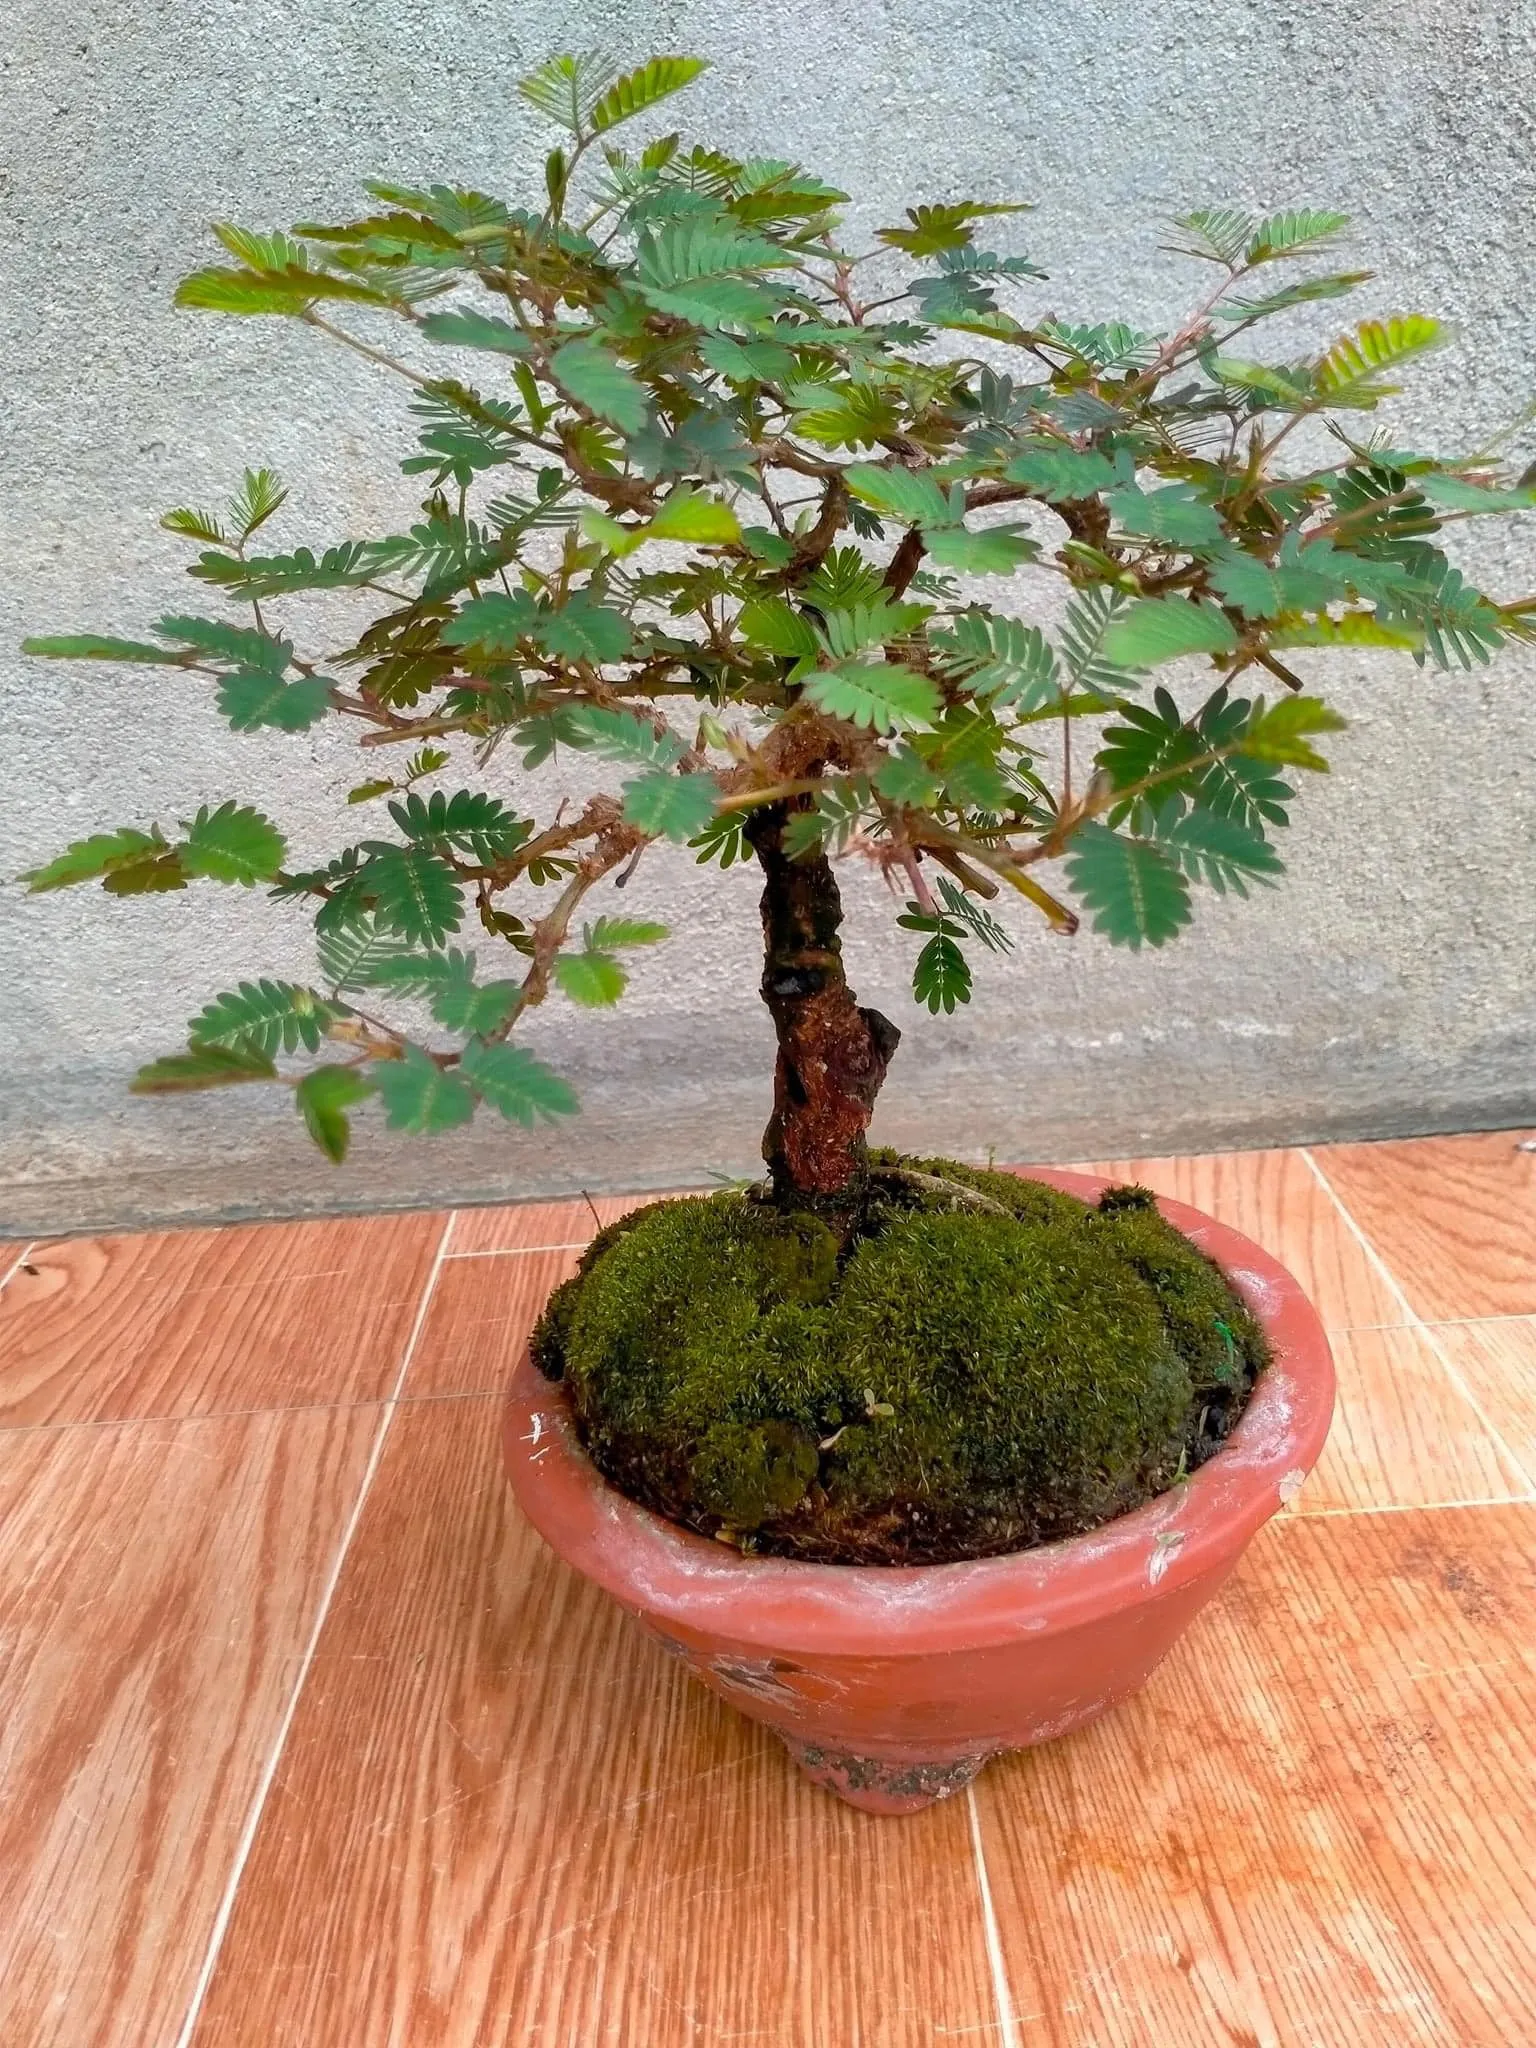 Cây trinh nữ bonsai có thích mọc tại những vùng núi rậm rạp, ít người sống